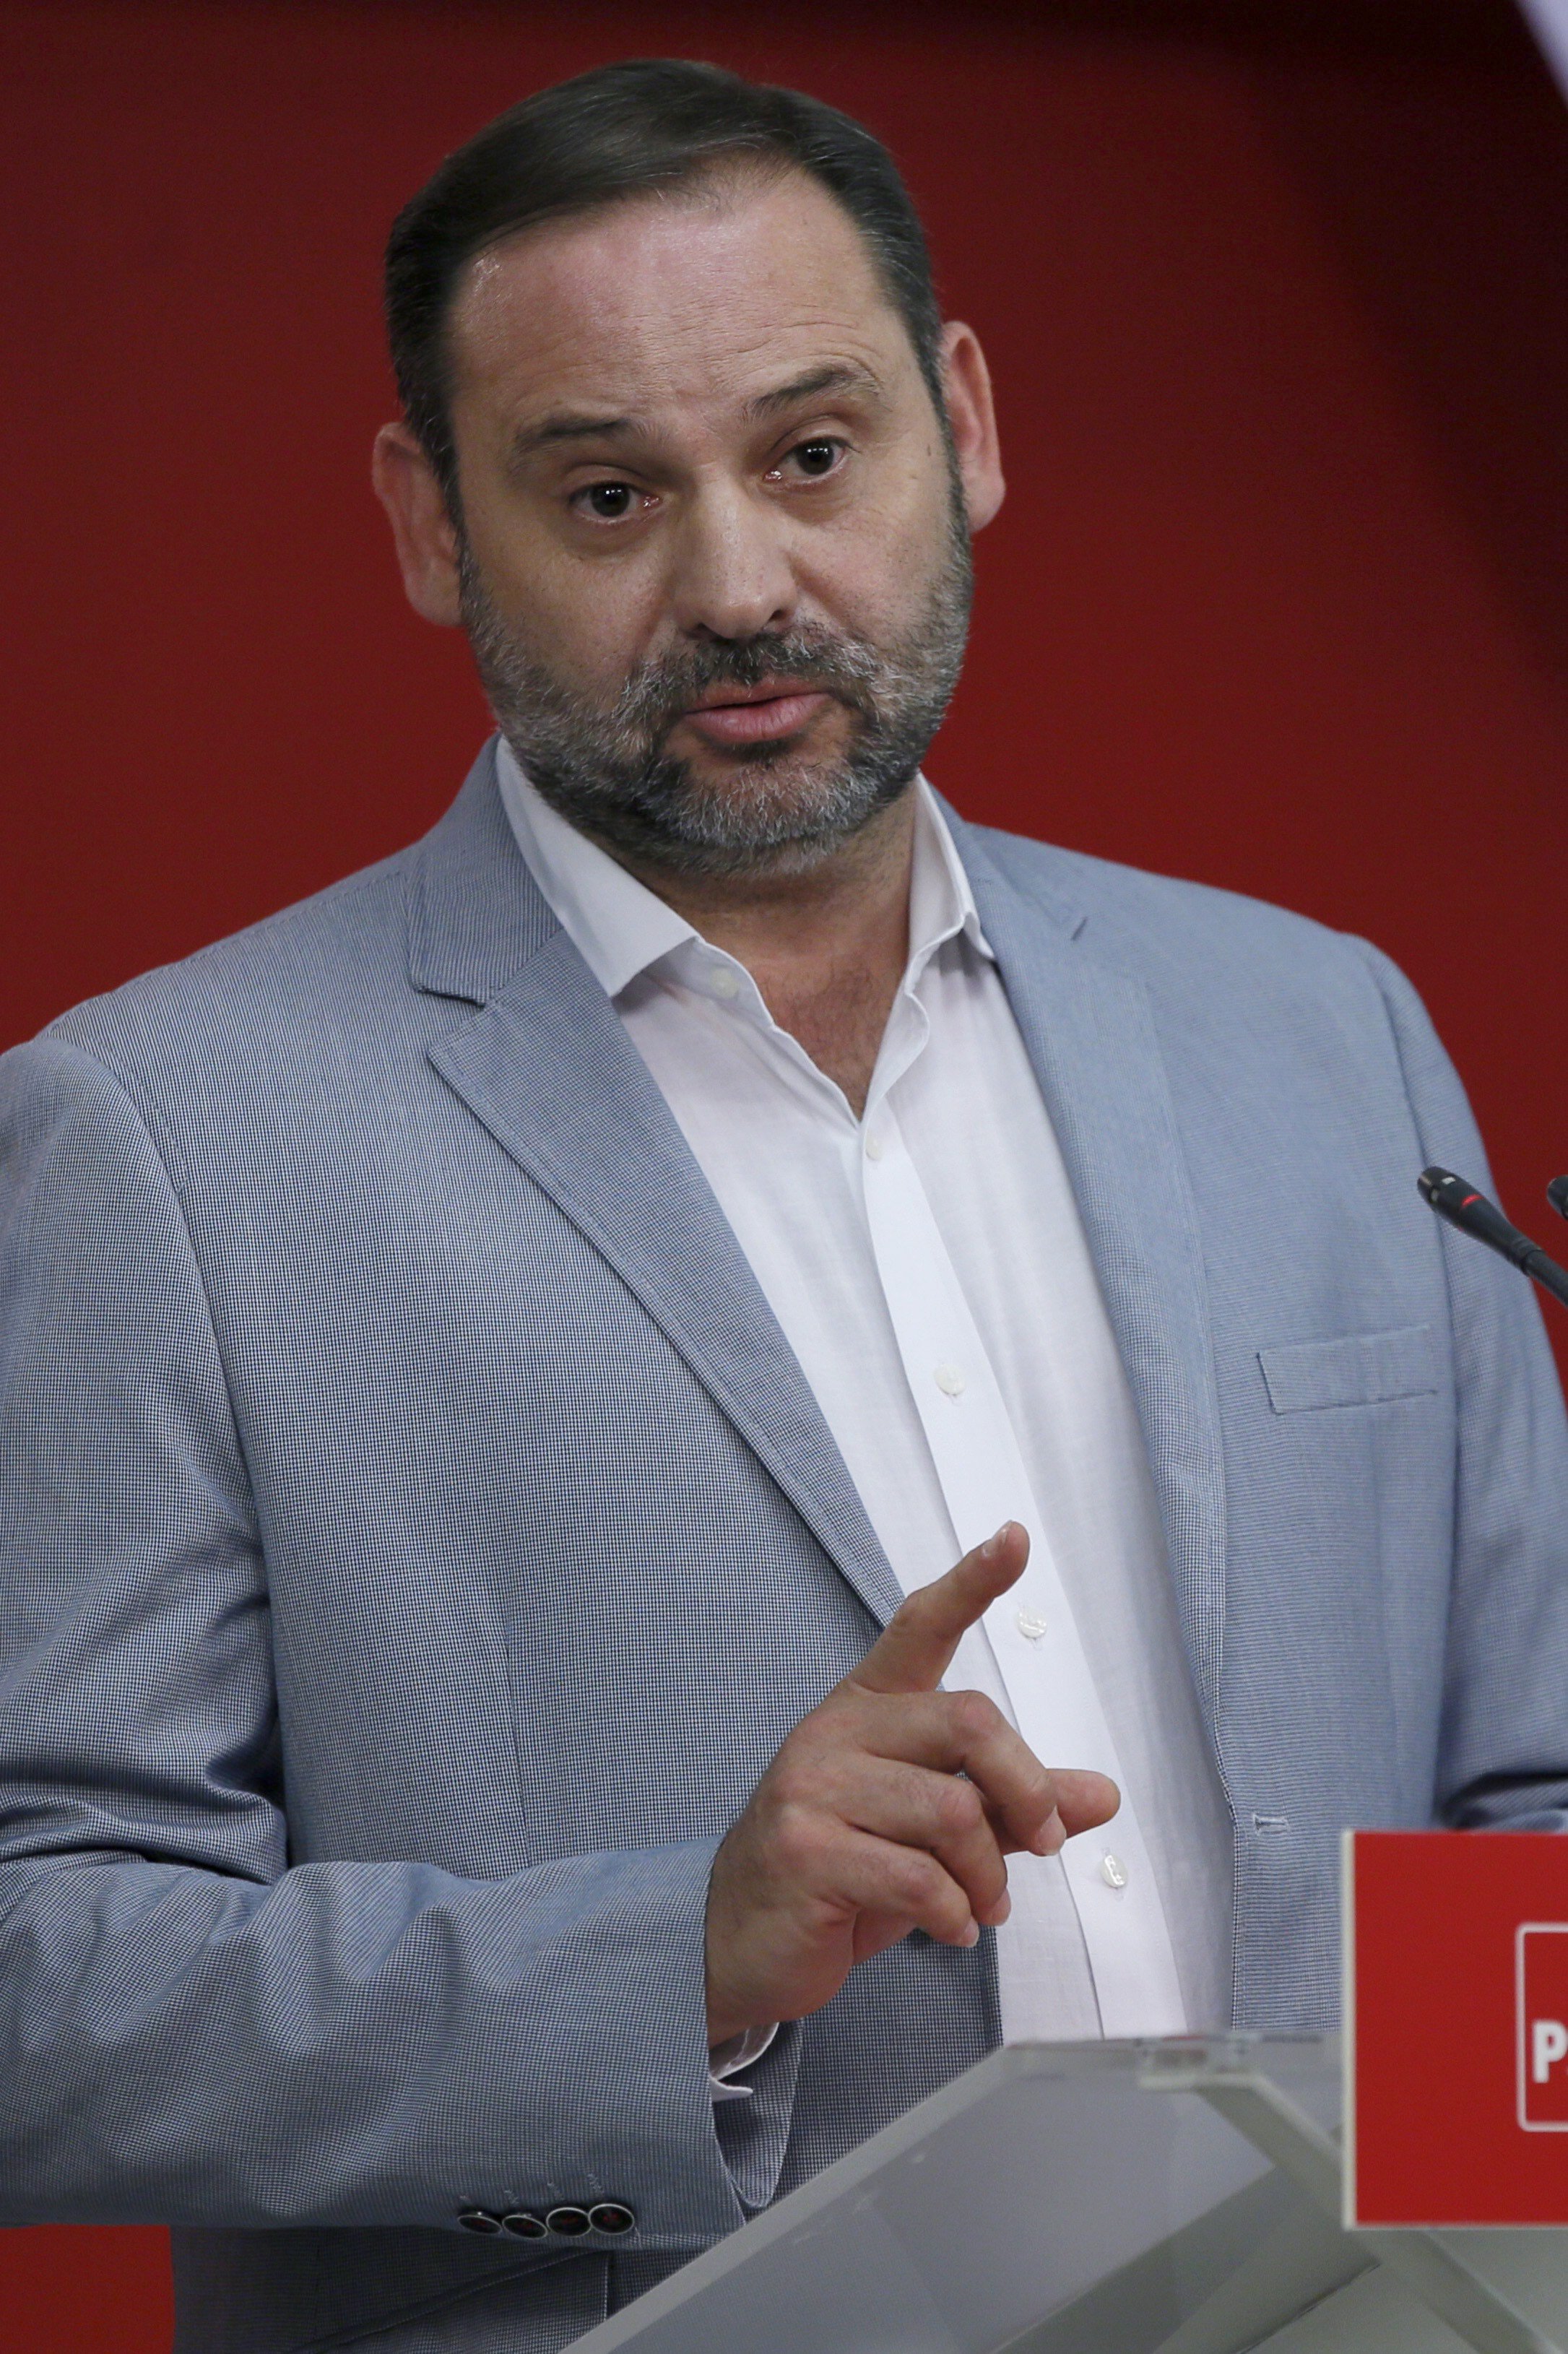 El PSOE apoya la respuesta del Estado ante el "atropello" independentista